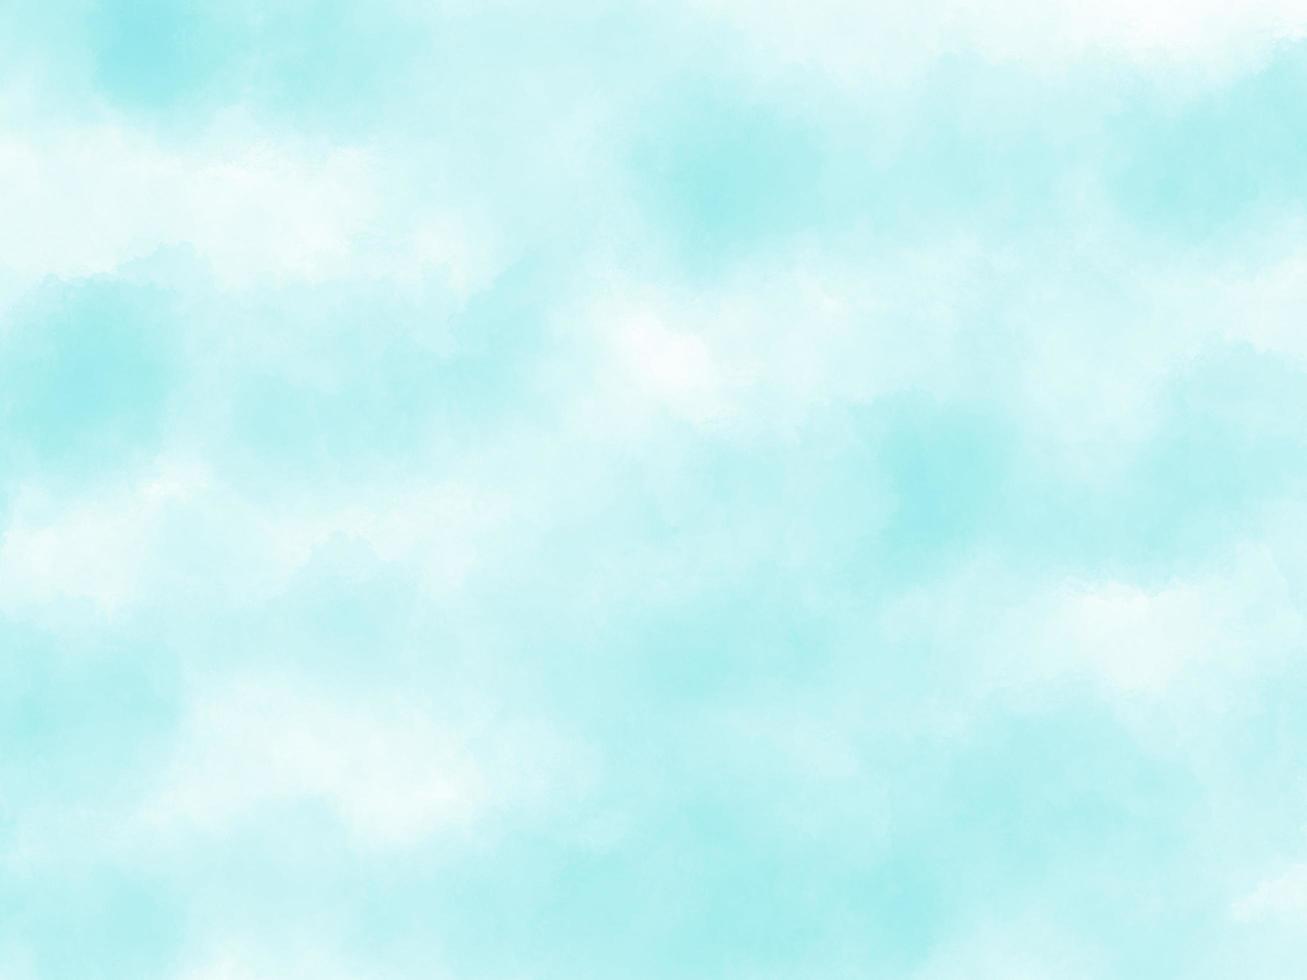 fundo de aquarela de cor azul céu claro manchado macio, tela texturizada de papel pintado aquarelle para design, cartão de convite, modelo. tons turquesas suaves criativos foto